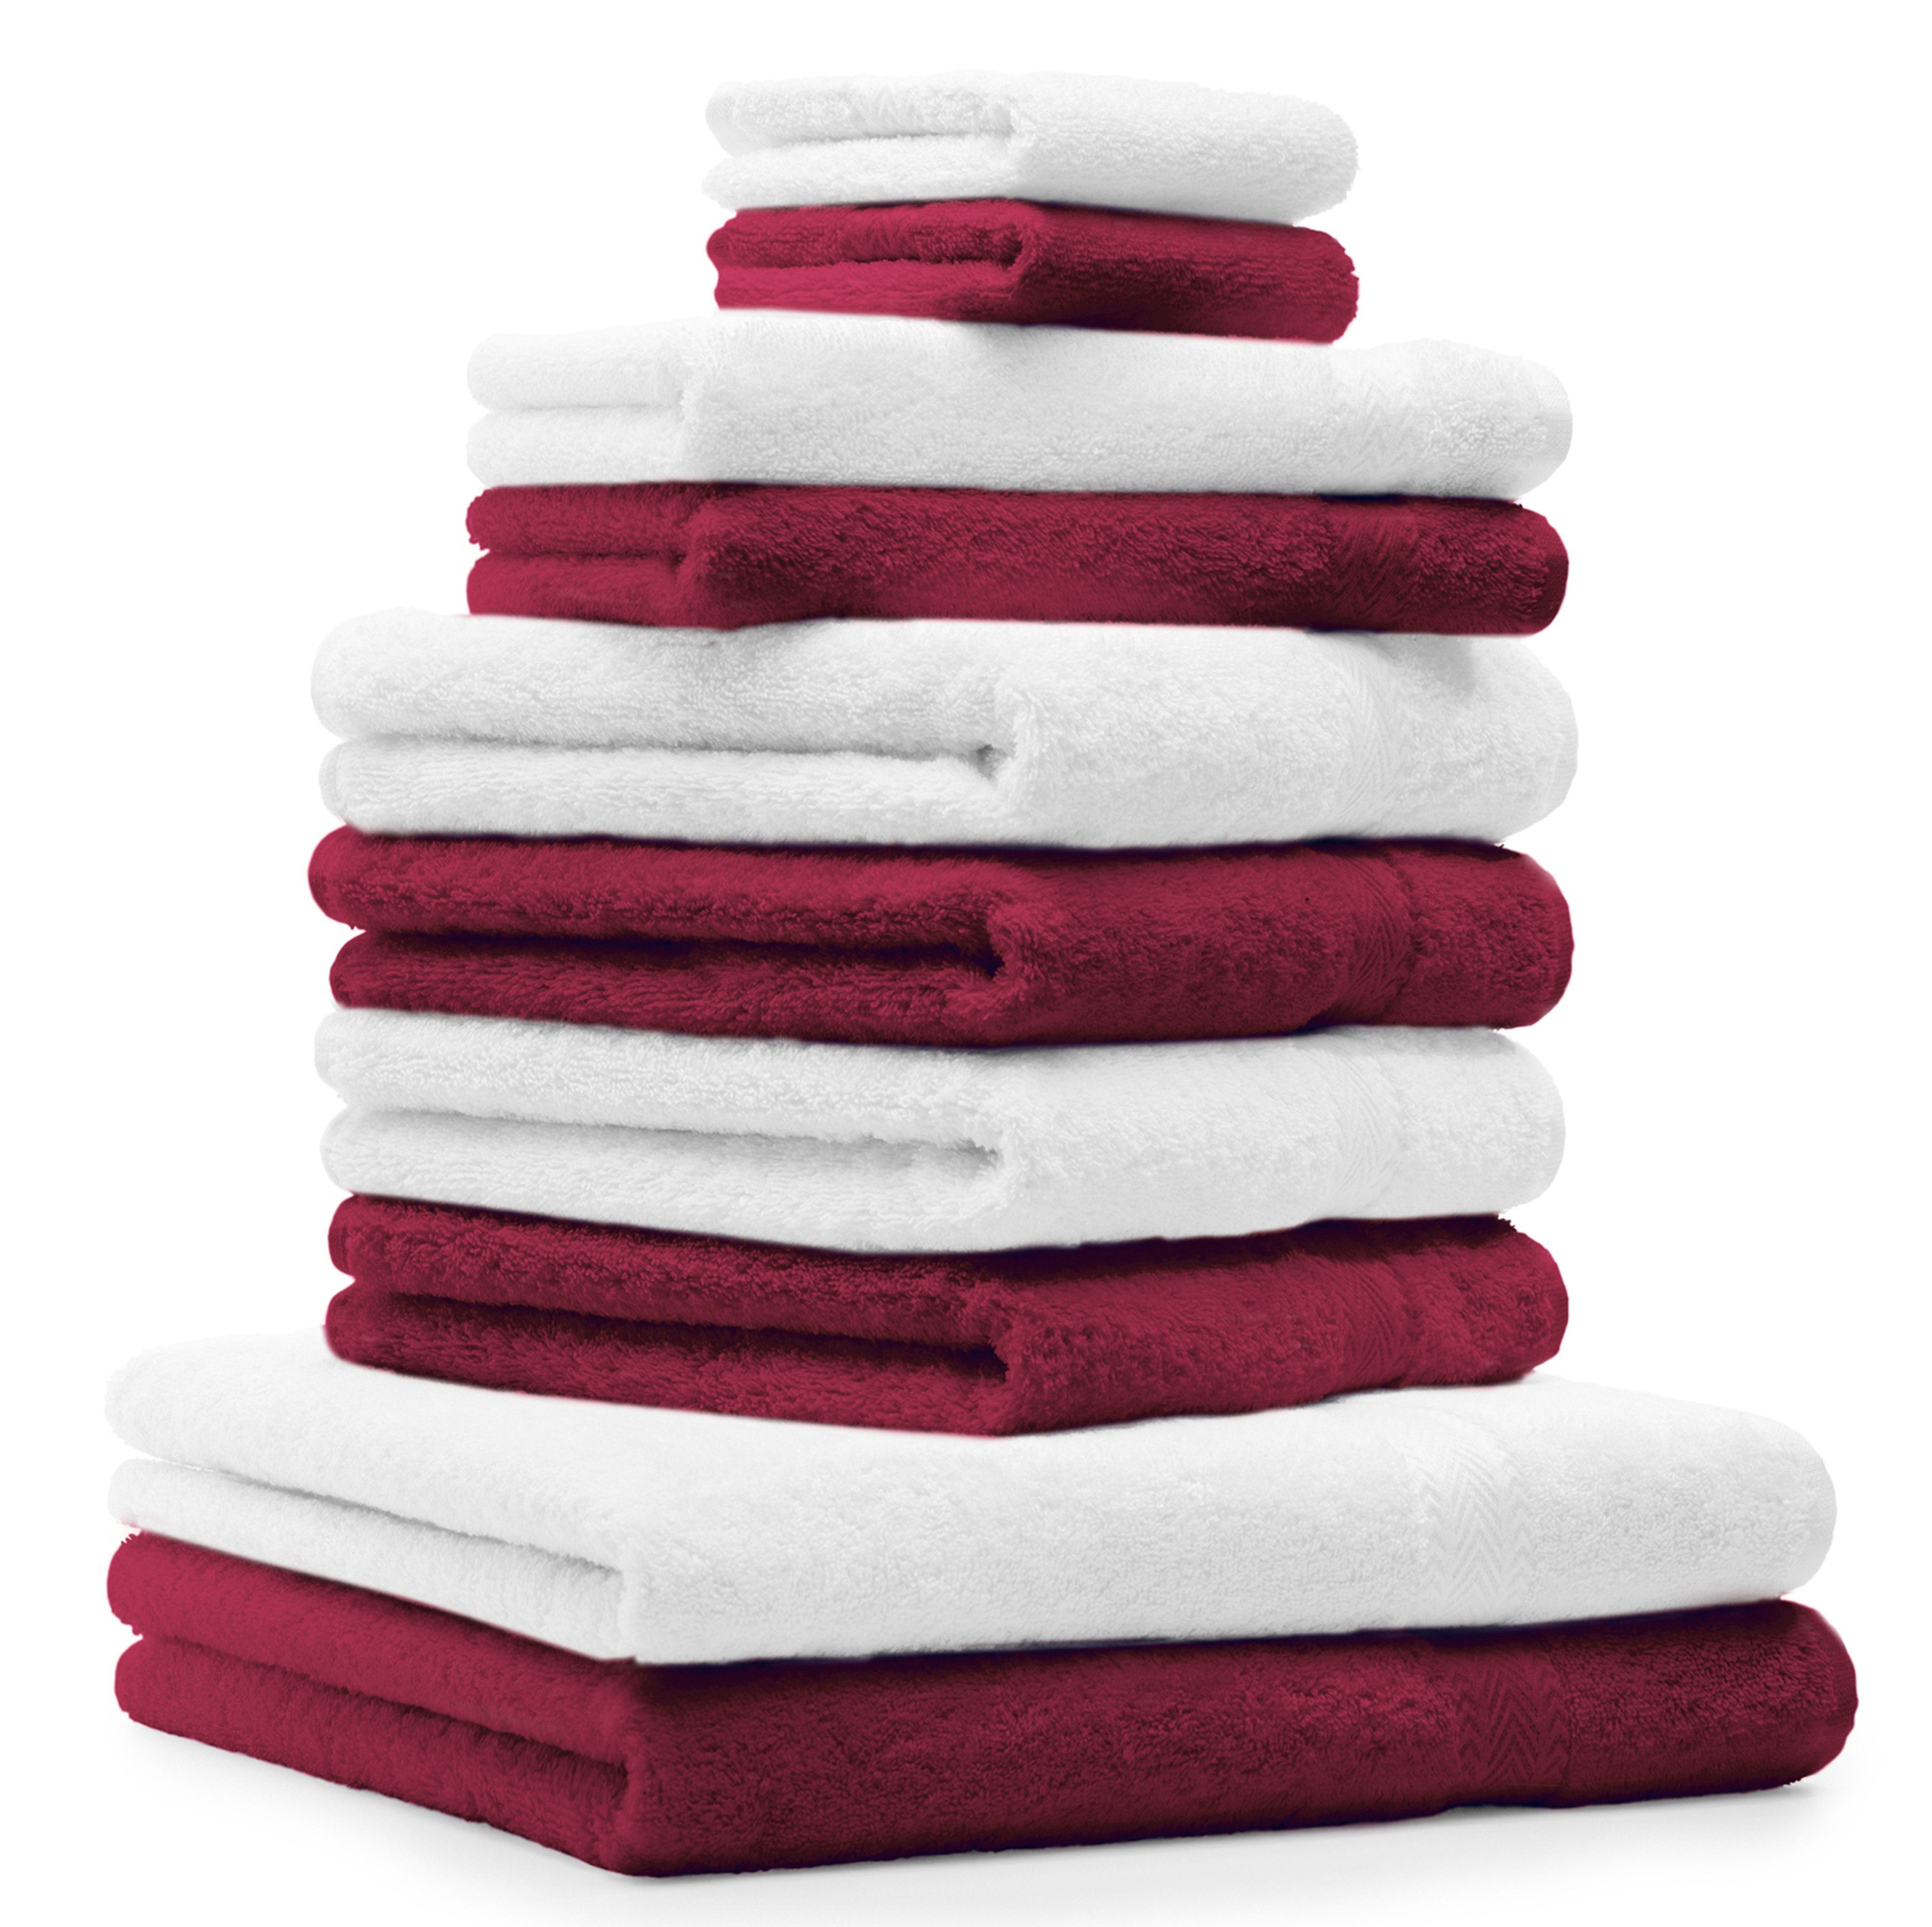 Betz Handtuch Set 10-Tlg. Handtuch-Set Classic 100% Baumwolle dunkelrot und weiß, 100% Baumwolle